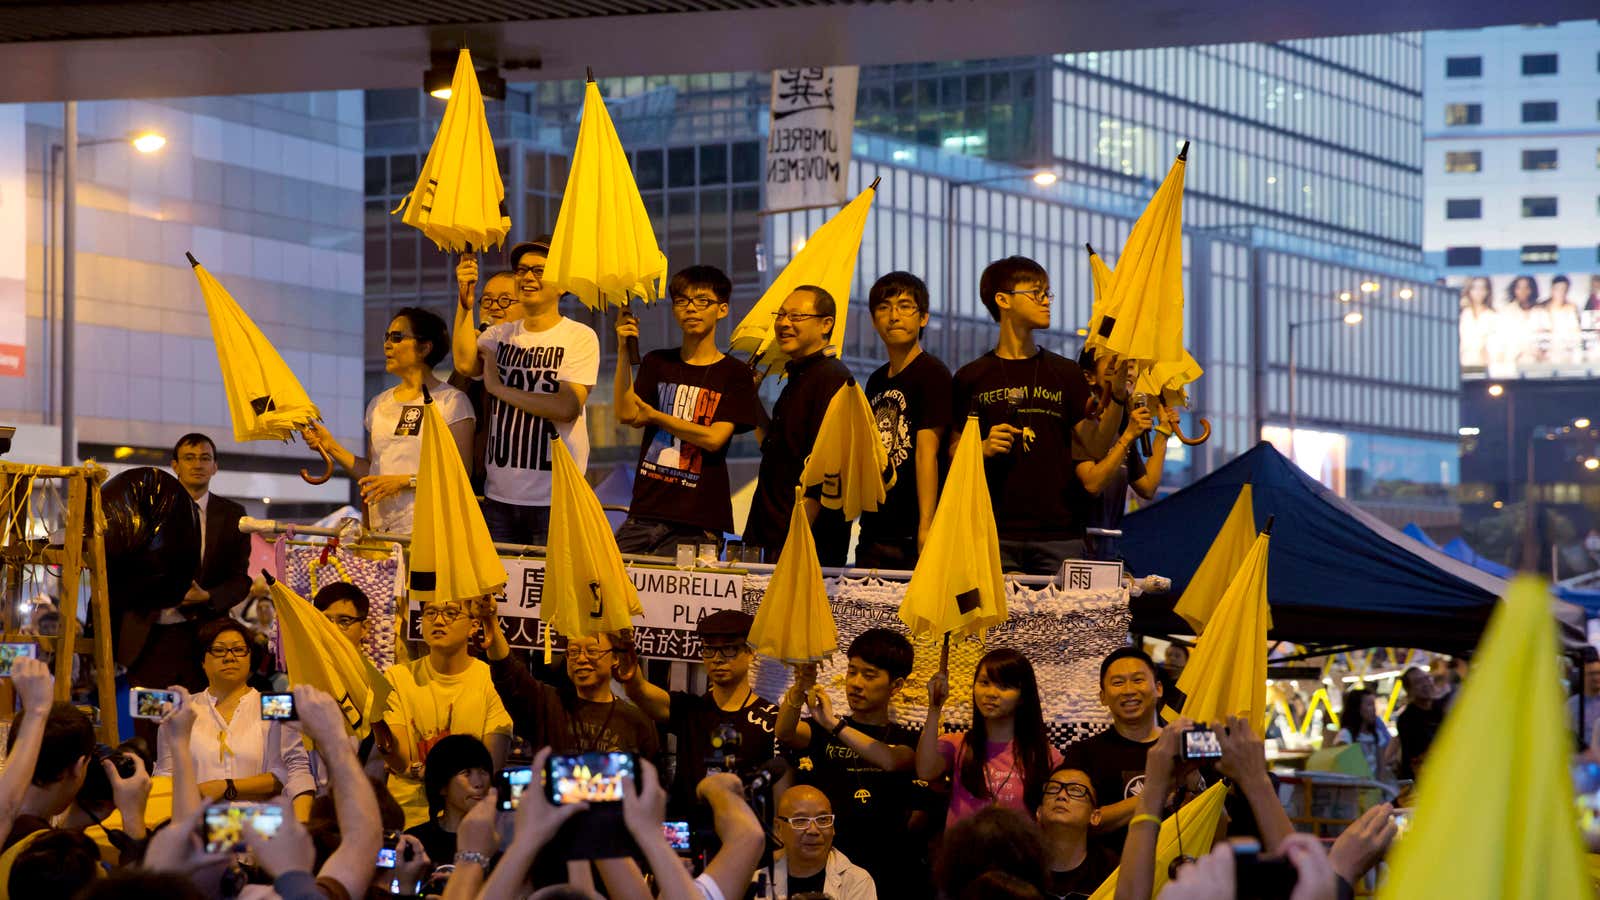 An Umbrella Revolution demonstration in Hong Kong in October 2014.